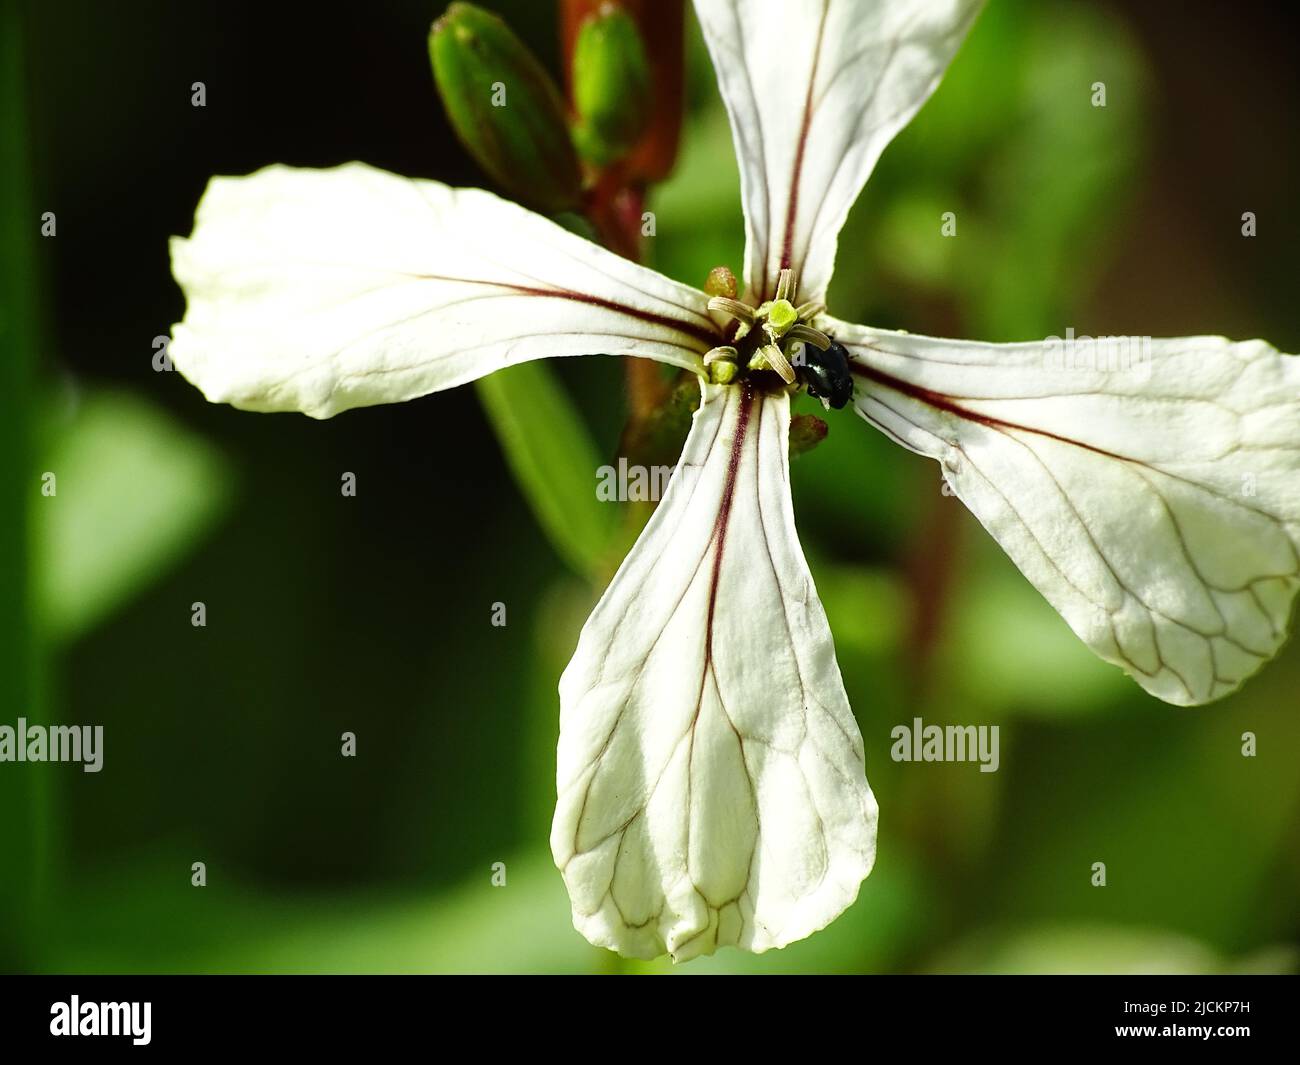 Supermakro einer weißen Rucola (Eruca vesicaria ssp. sativa) Blume mit einem grünen unscharfen Hintergrund Stockfoto